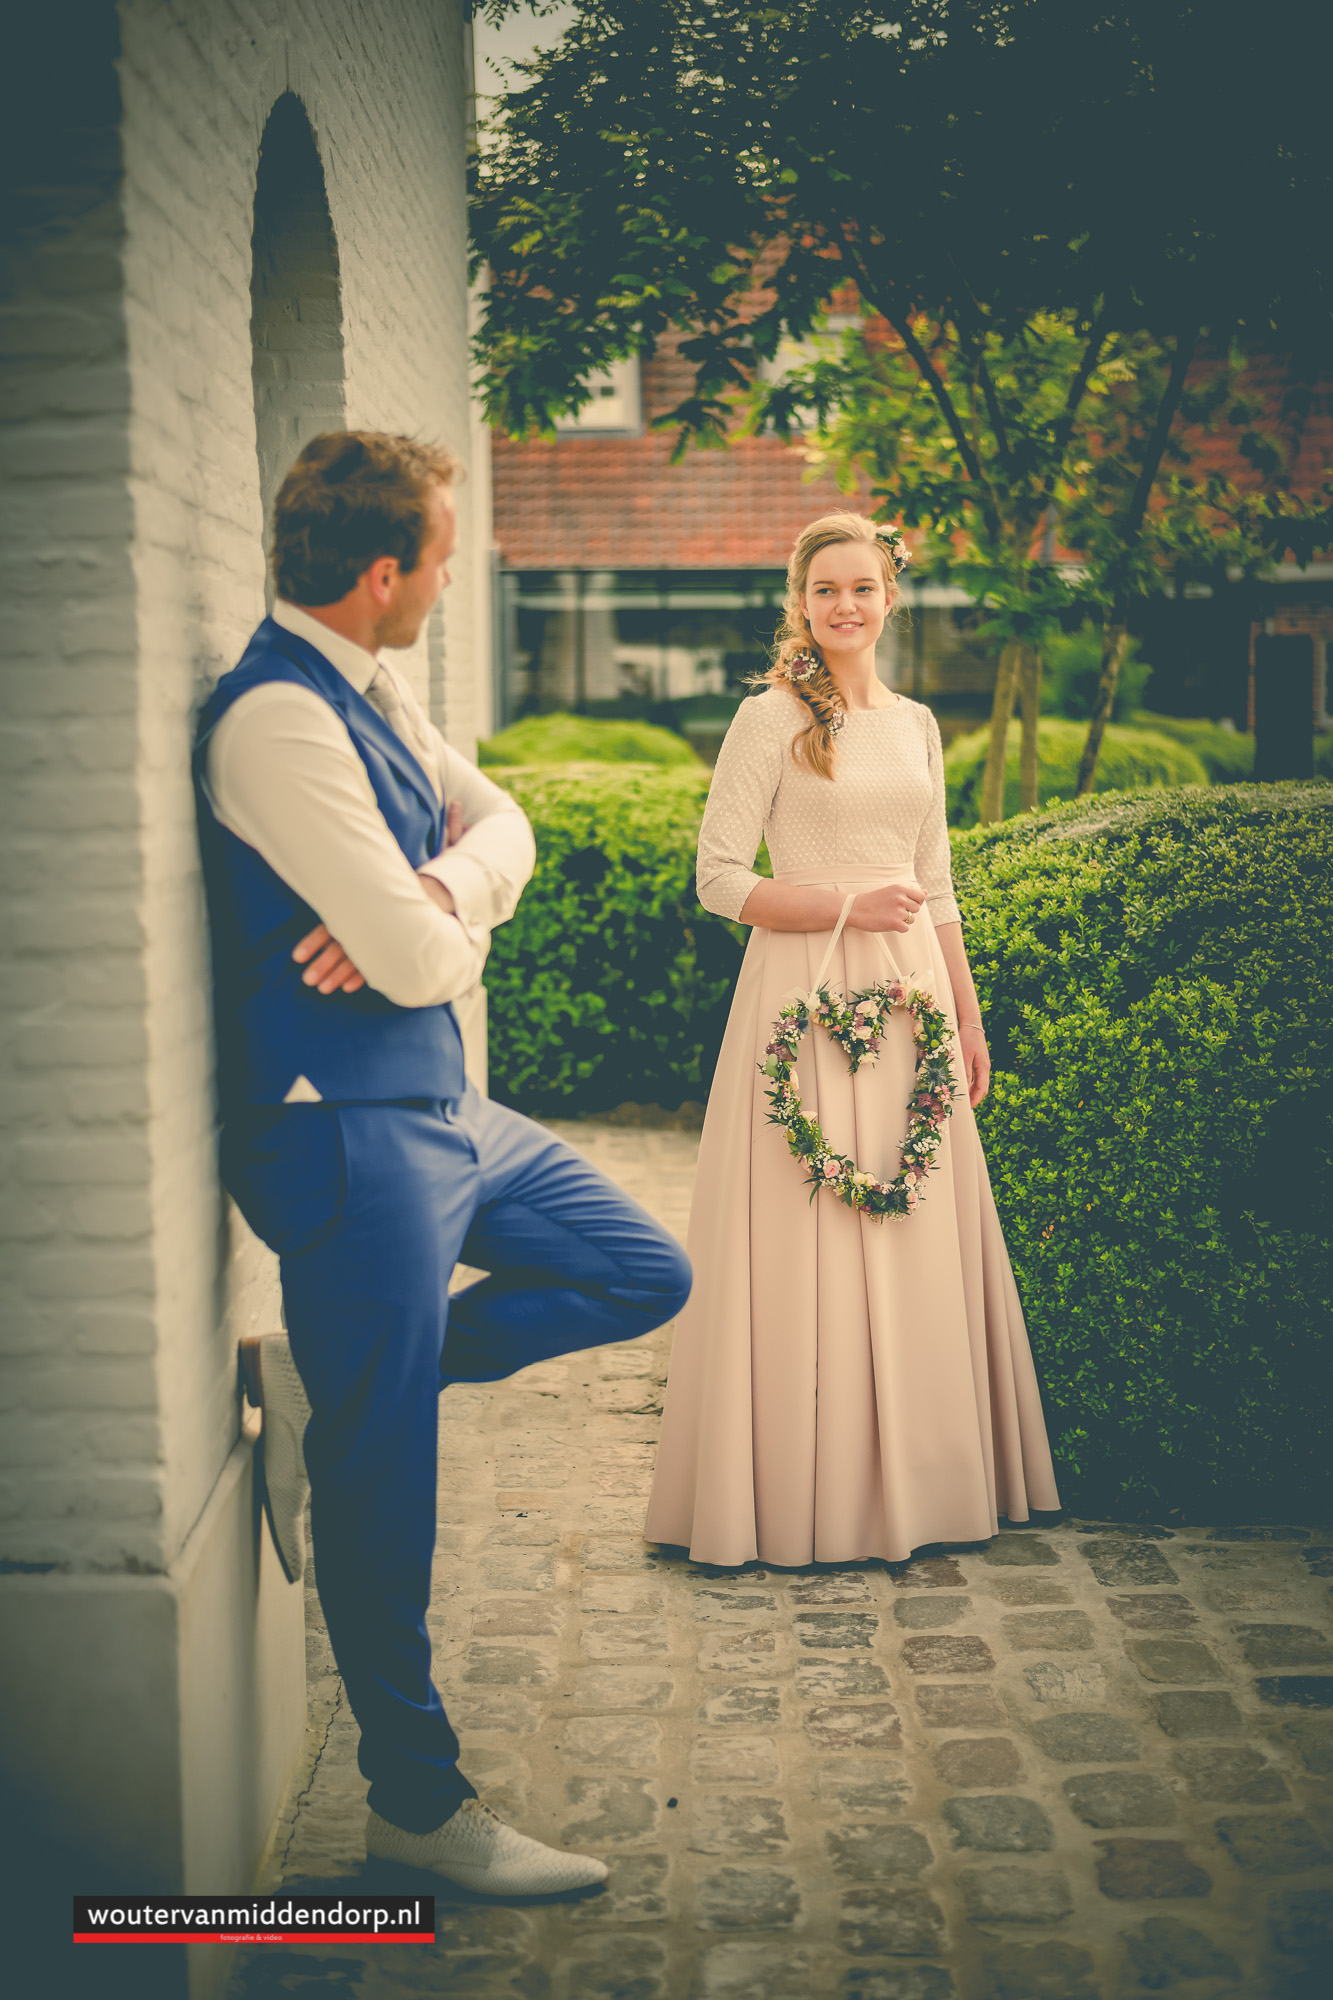 Bruidsfotograaf Wouter van Middendorp